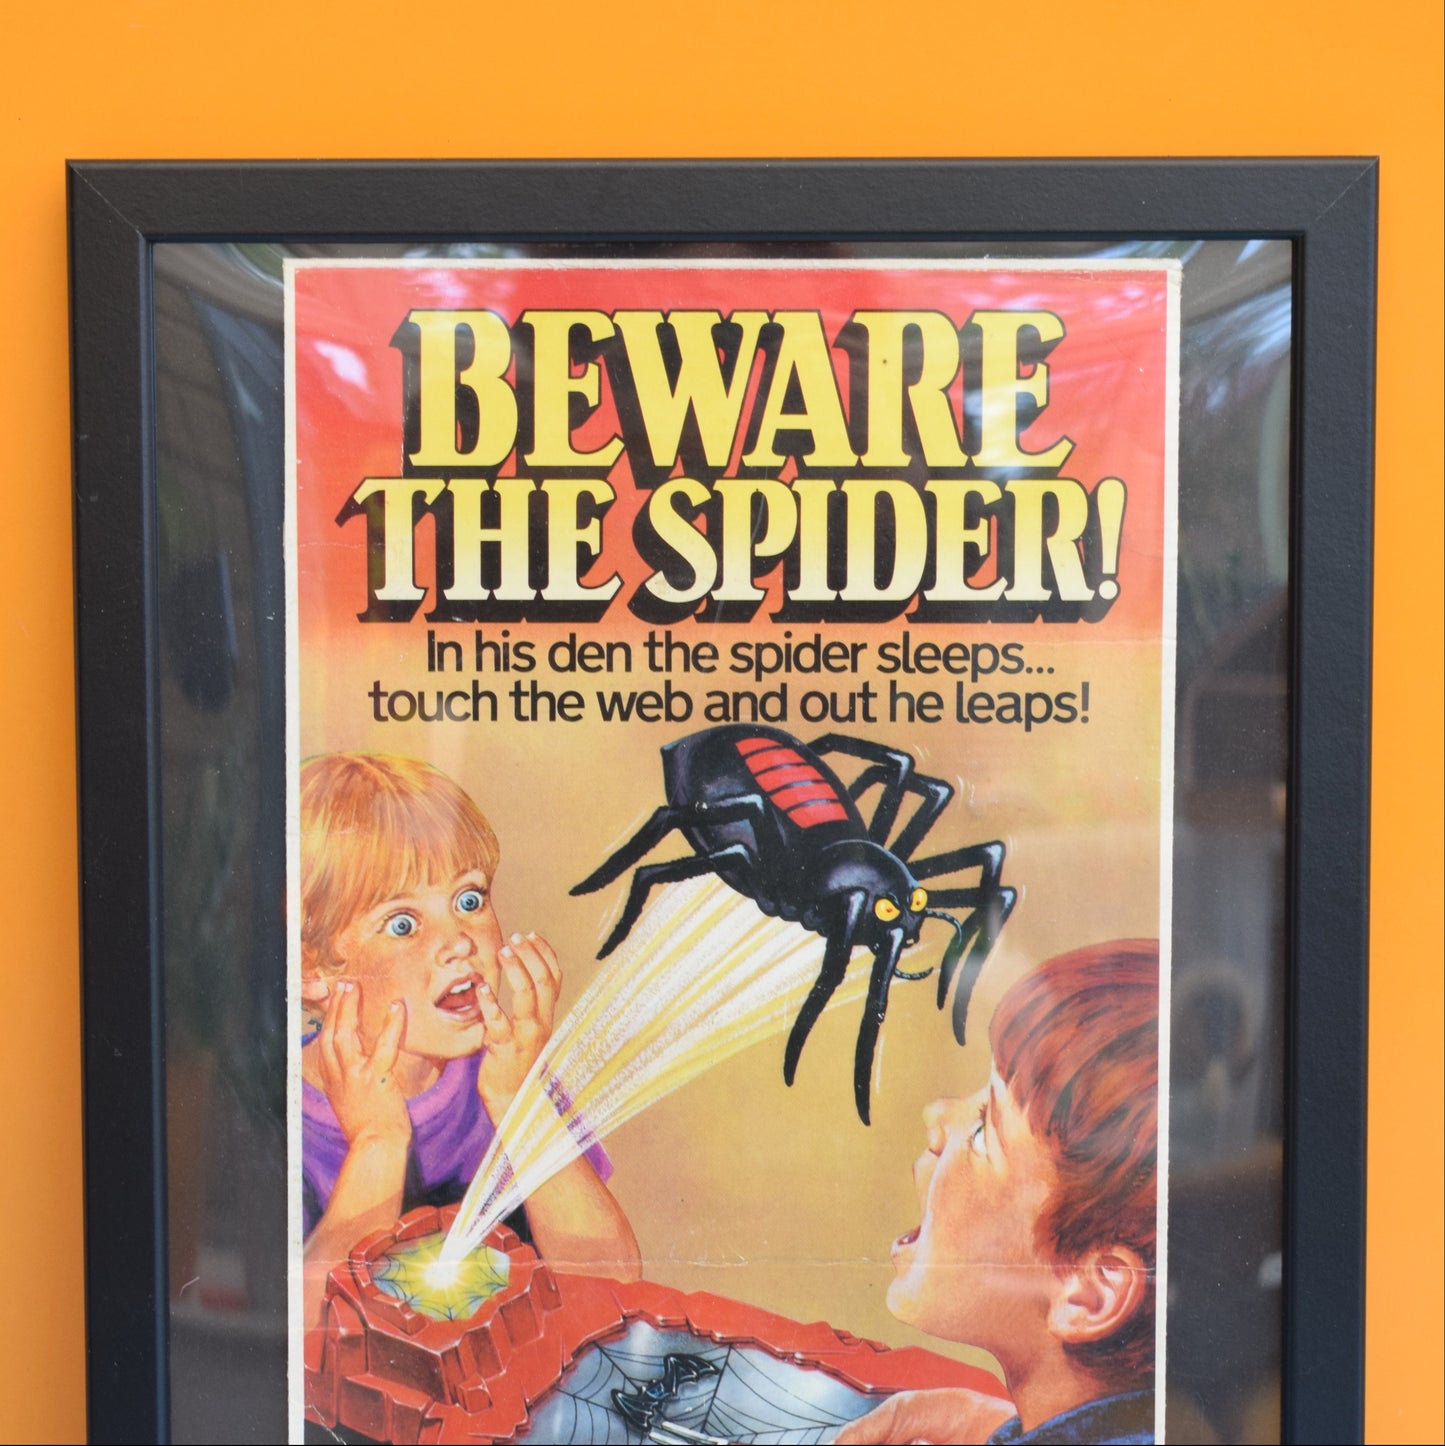 Vintage 1970s Framed Spider Game Artwork